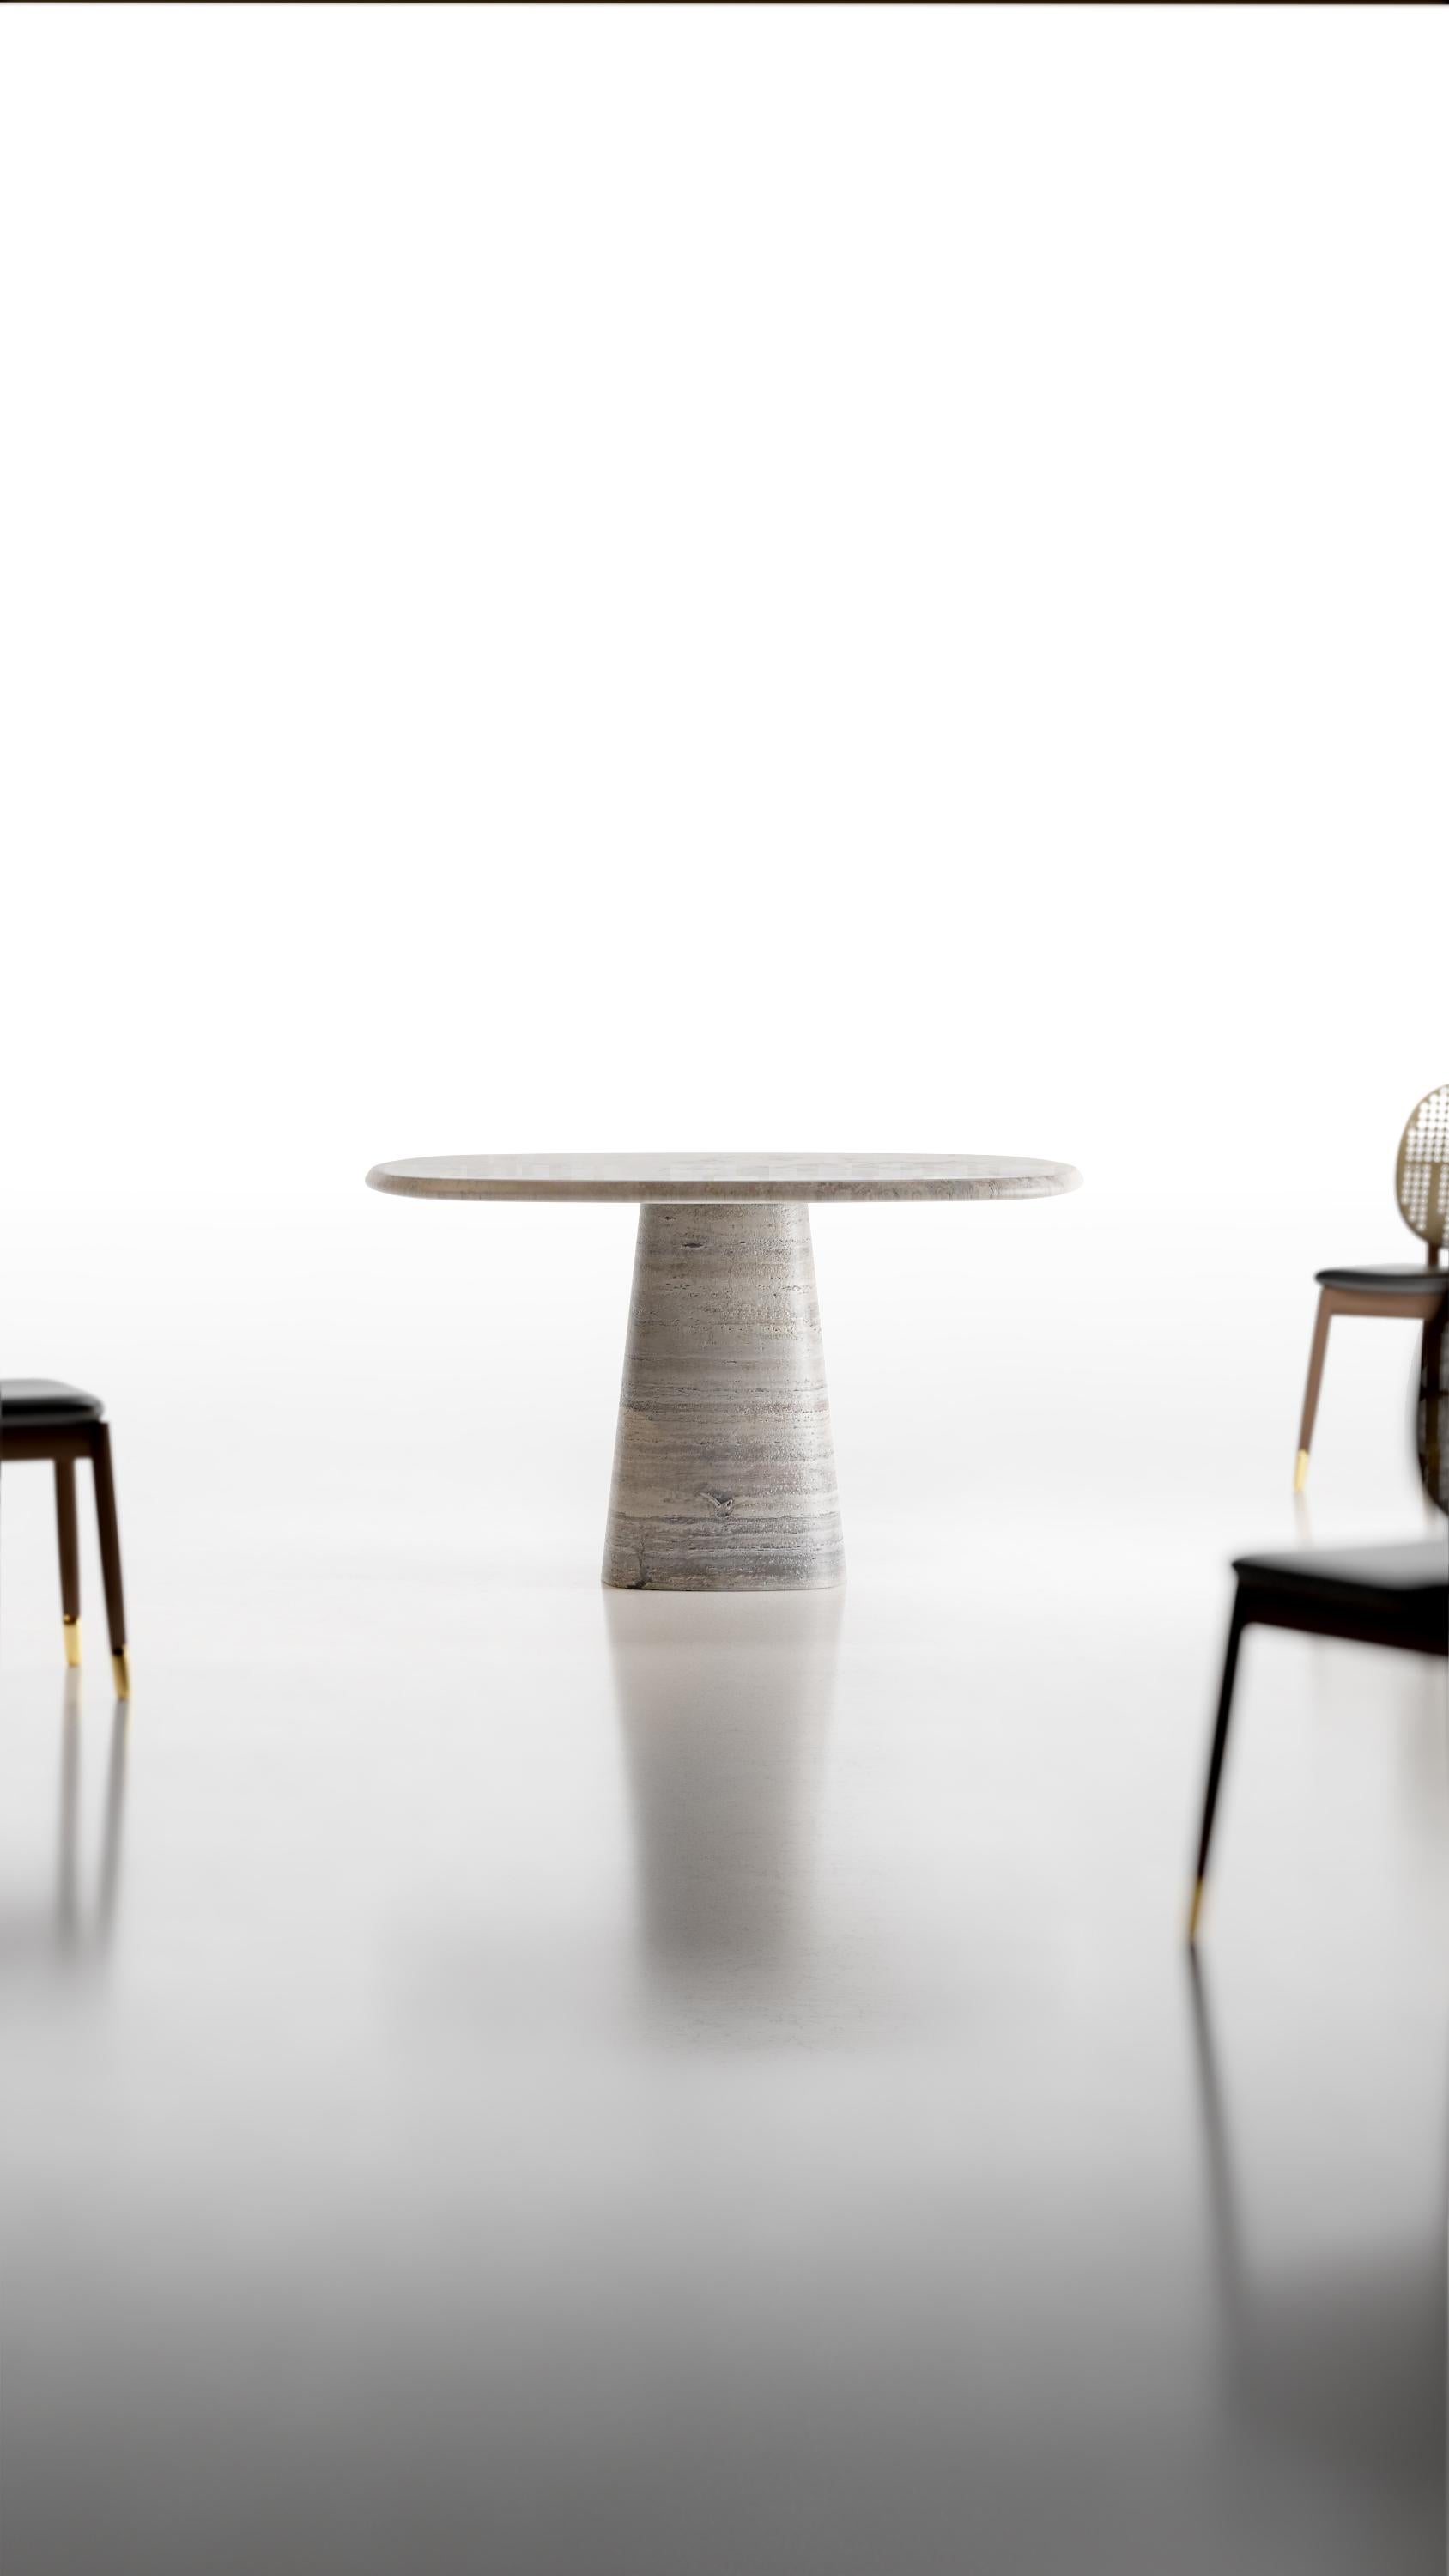 Calacatta Macchia Vecchia Wedge Table by Marmi Serafini In New Condition For Sale In Geneve, CH